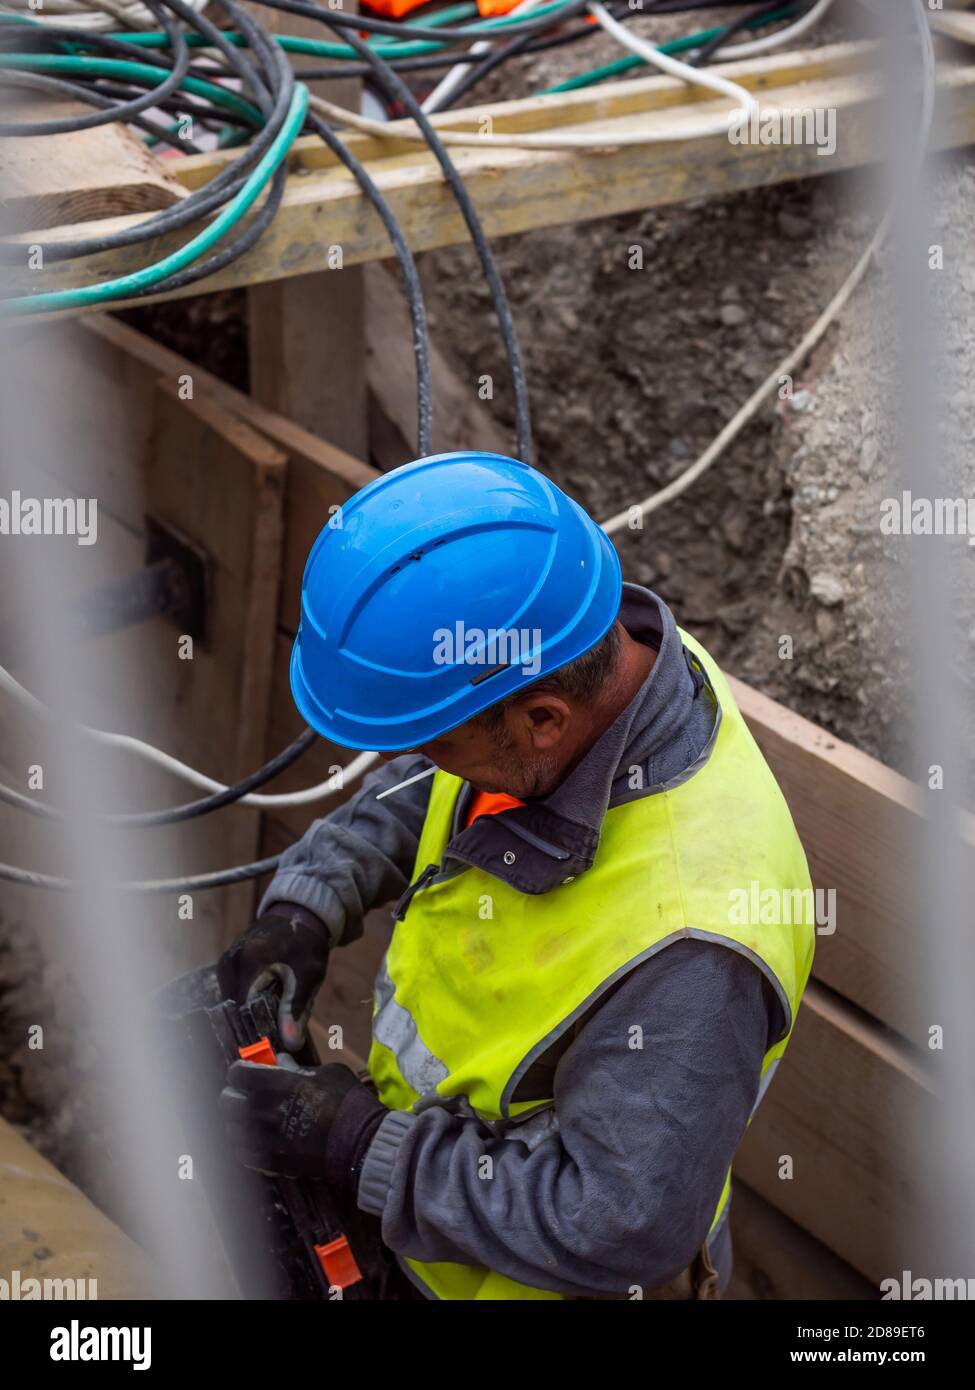 Montatore di tubi in uniforme gialla che lavora su un cantiere. Tubi di raccordo per lavoratori sotterranei, Ginevra, Svizzera. Foto Stock